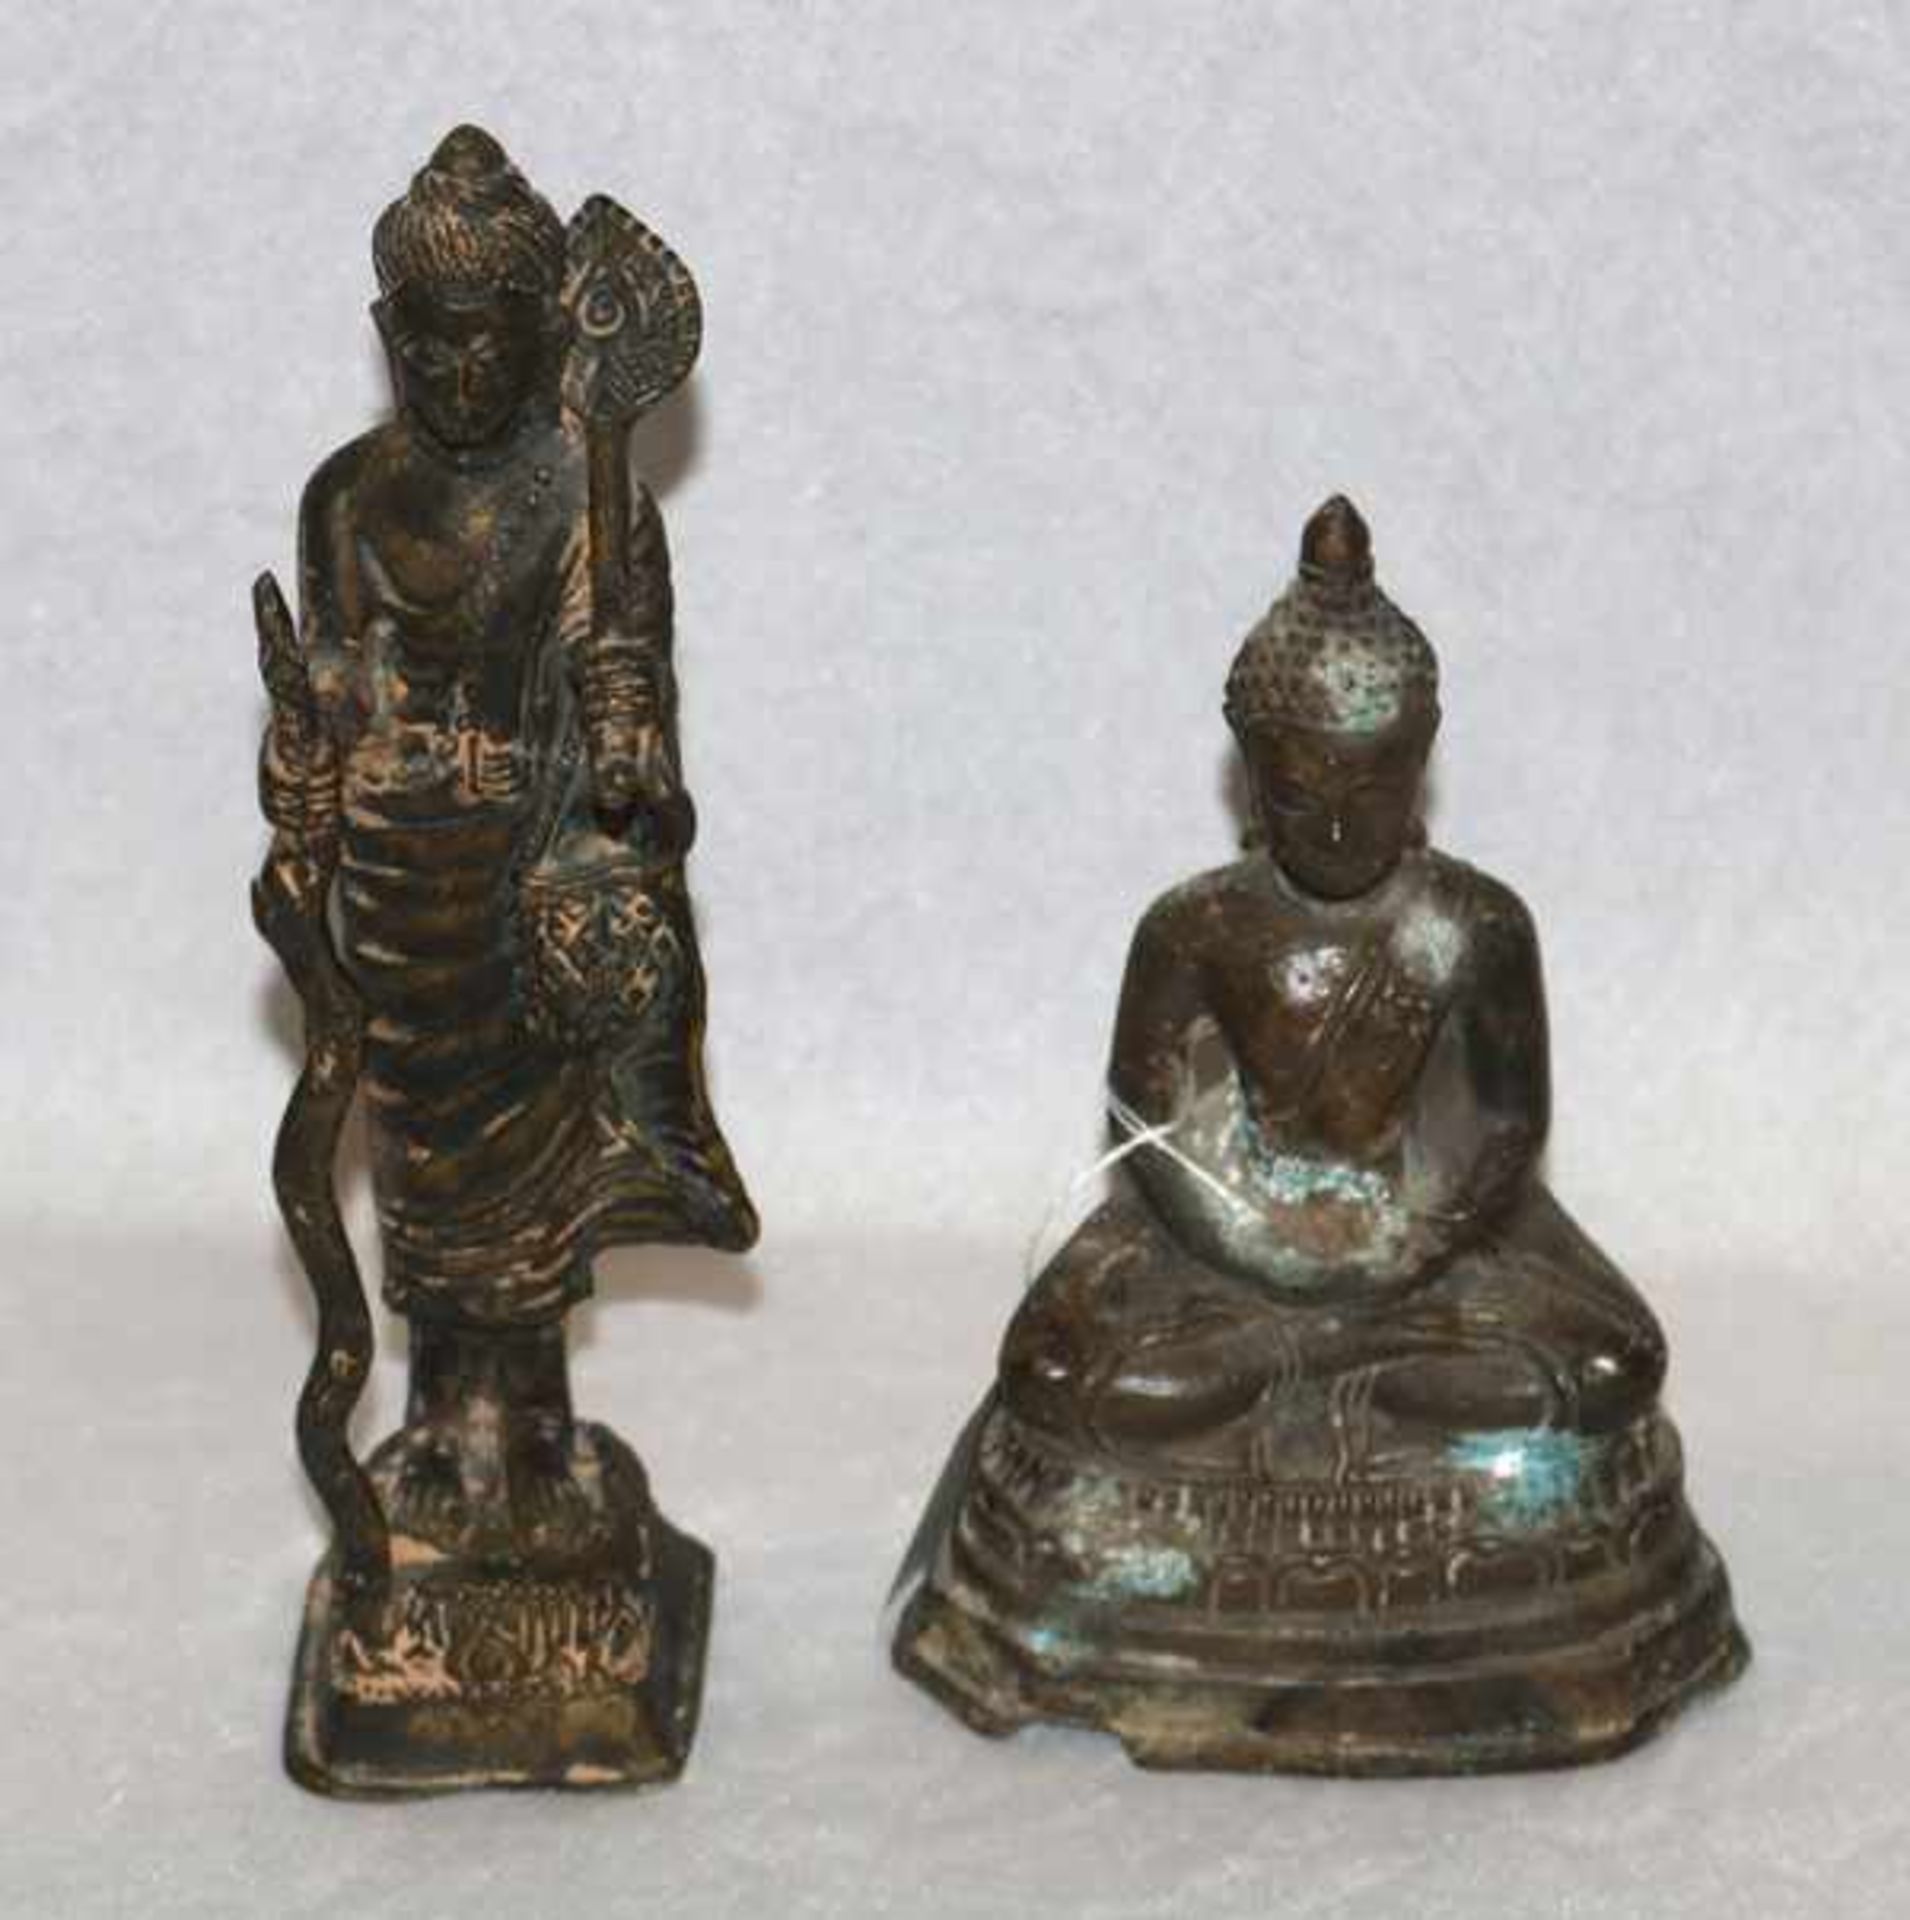 Metallfigur 'Thailändischer Buddha', H 18 cm, und Metallfigur mit Fächer, H 25 cm